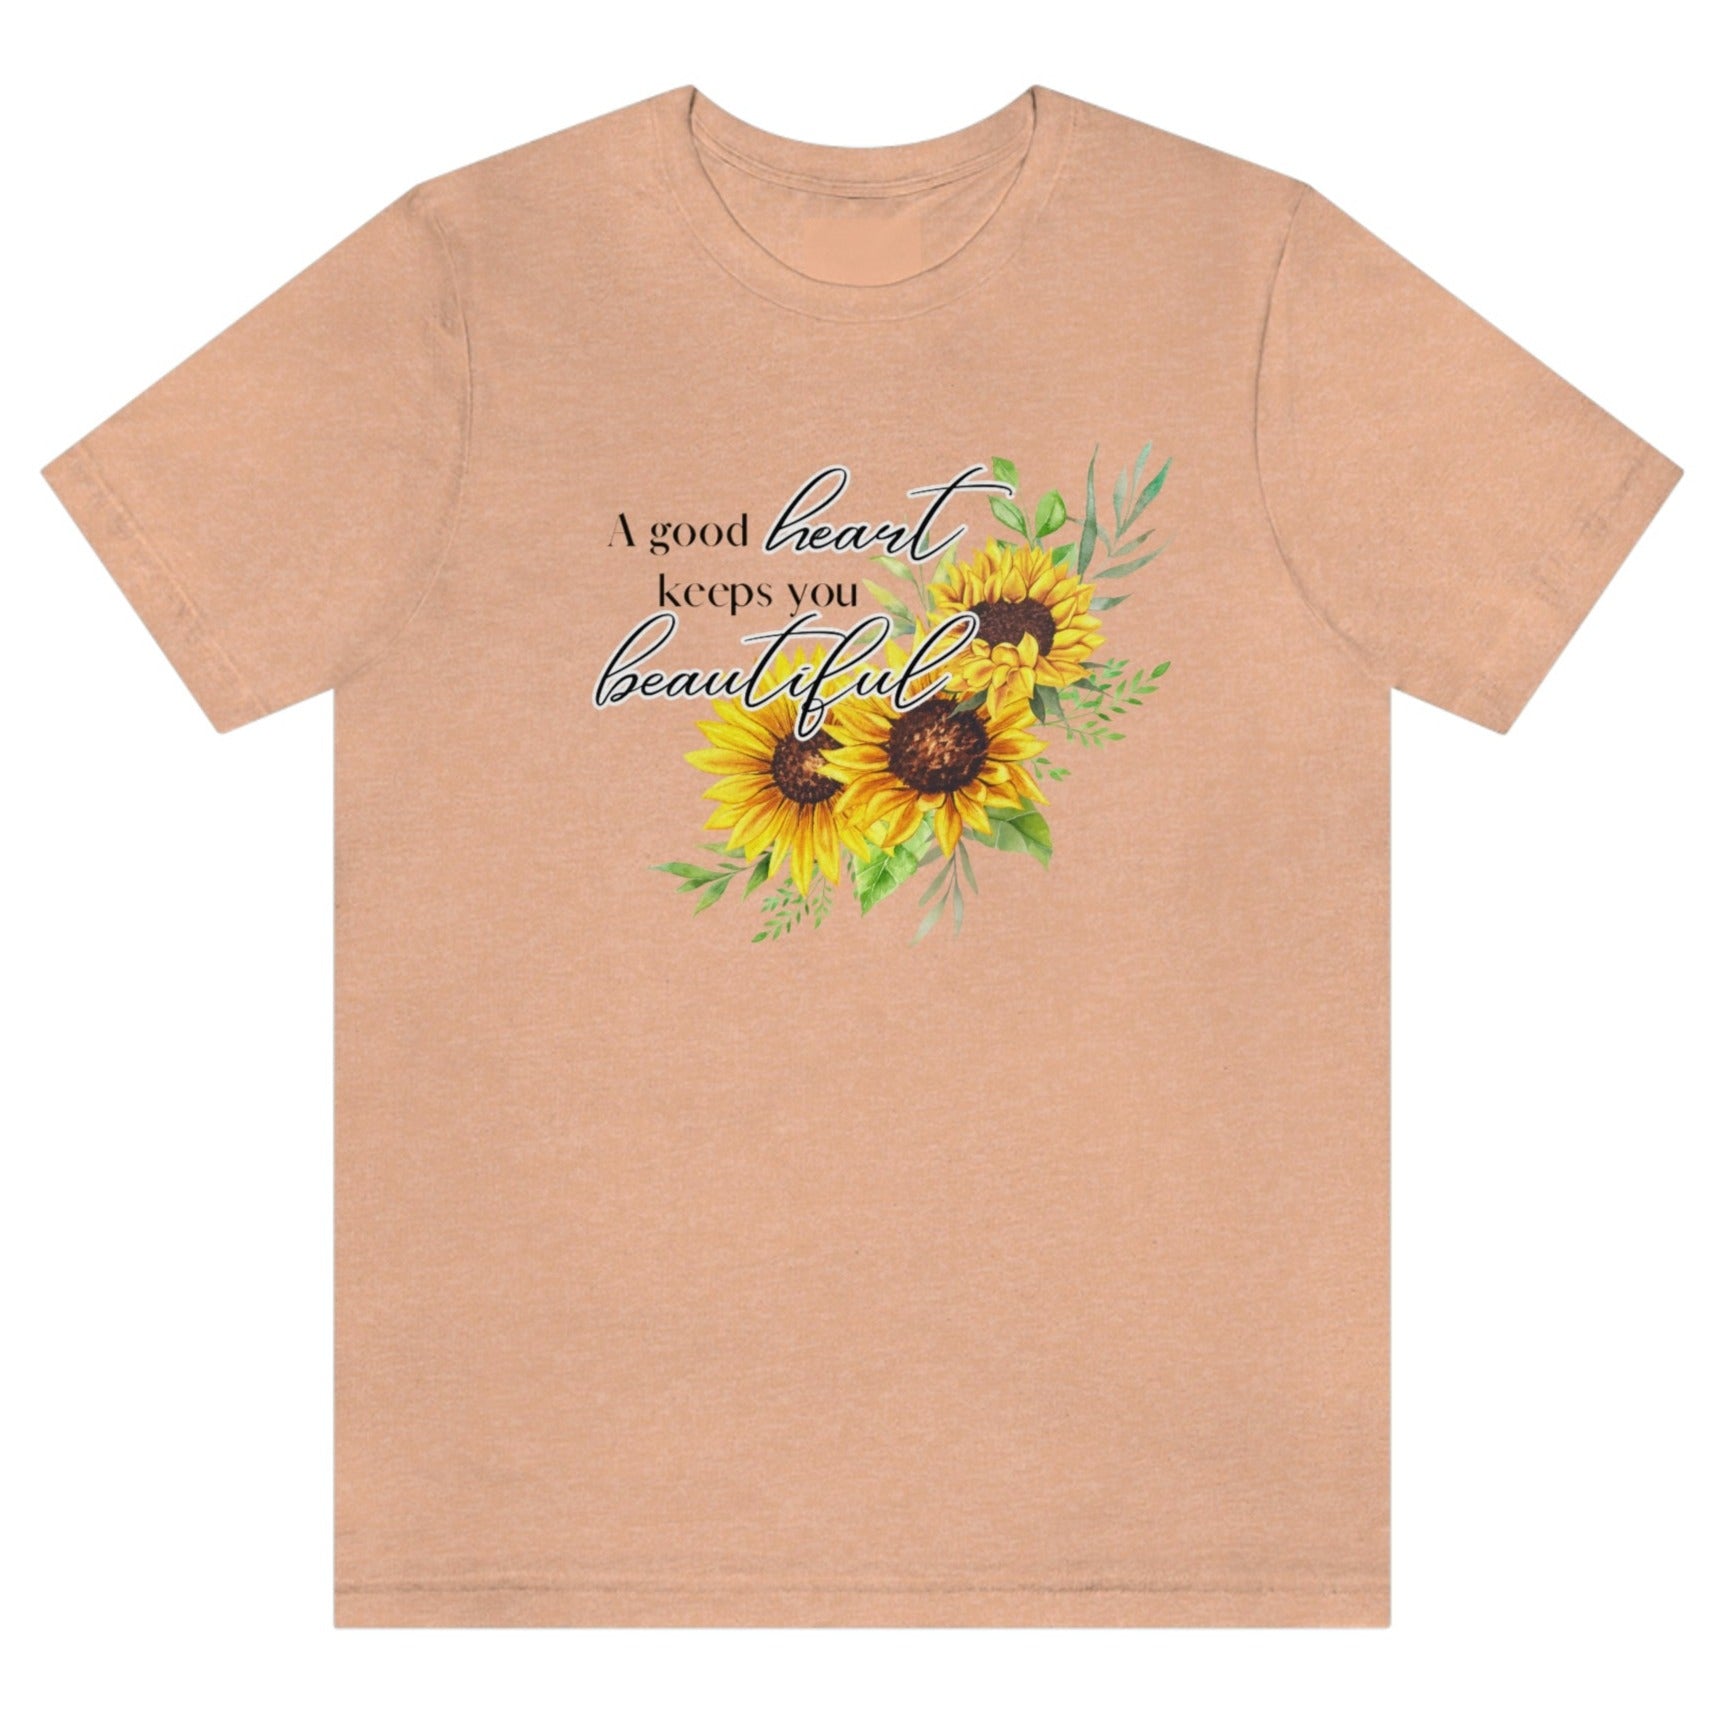 a-good-heart-keeps-you-beautiful-heather-peach-t-shirt-womens-sunflower